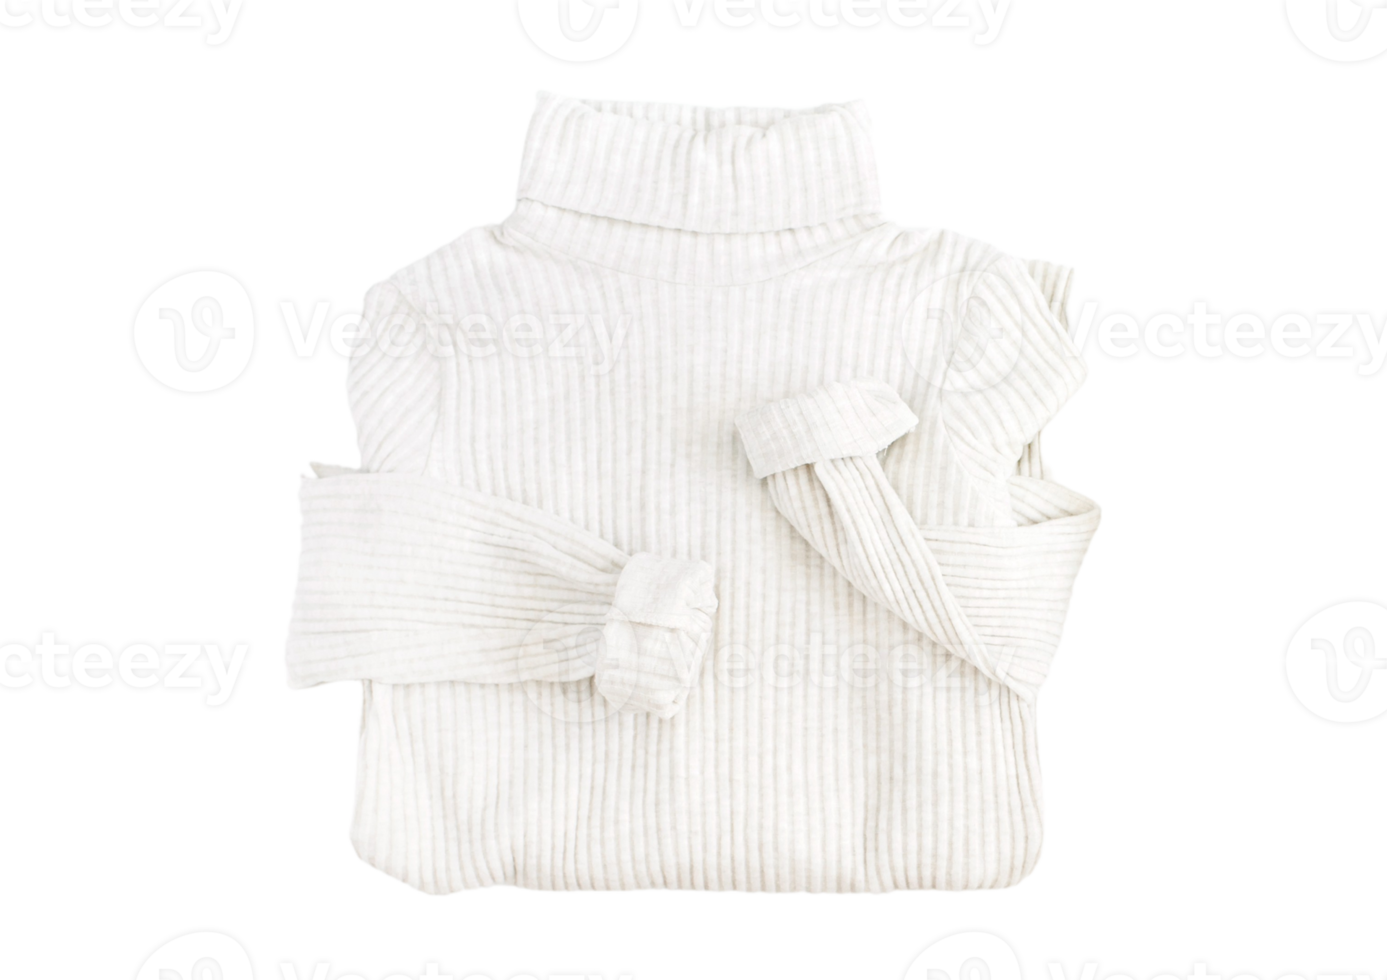 blanco mano tejer suéter aislado en un transparente antecedentes png